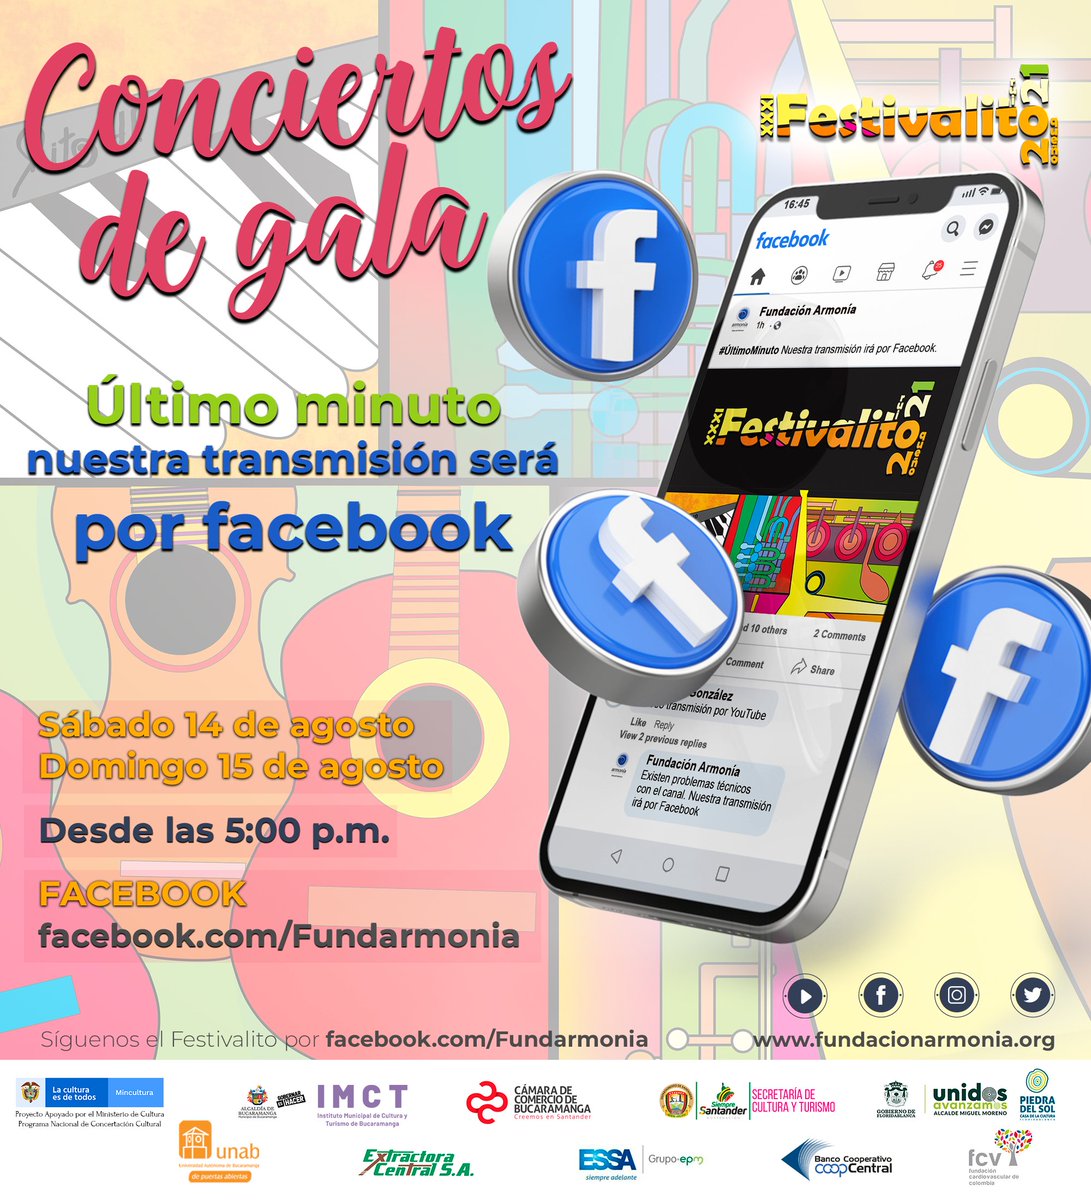 #Festivalito2021
ÚLTIMO MINUTO. Por problemas técnicos con nuestro canal YouTube la transmisión de nuestros Conciertos de Gala se dará vía Facebook. 
facebook.com/Fundarmonia